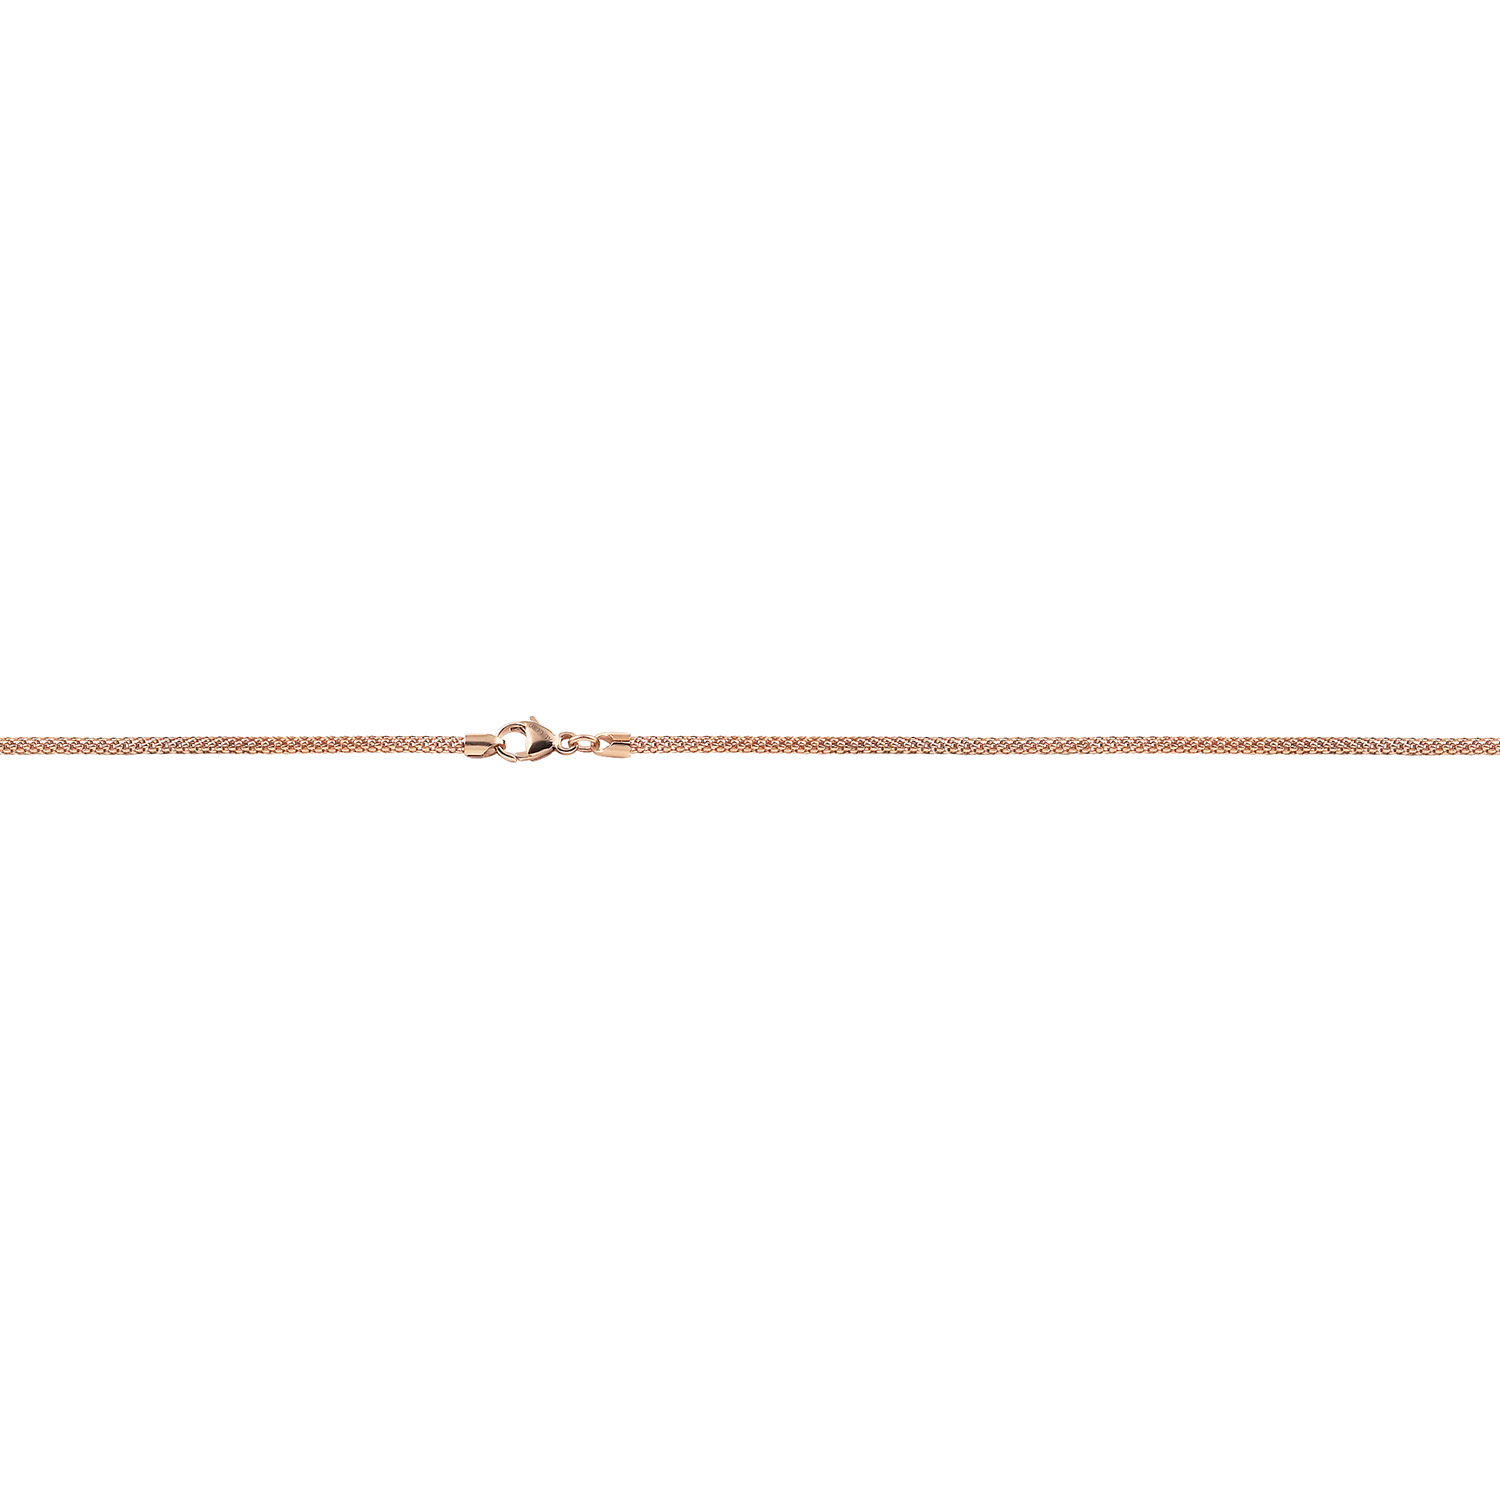 Al Coro Woven Chain in 18k Rose Gold K01 - Orsini Jewellers NZ